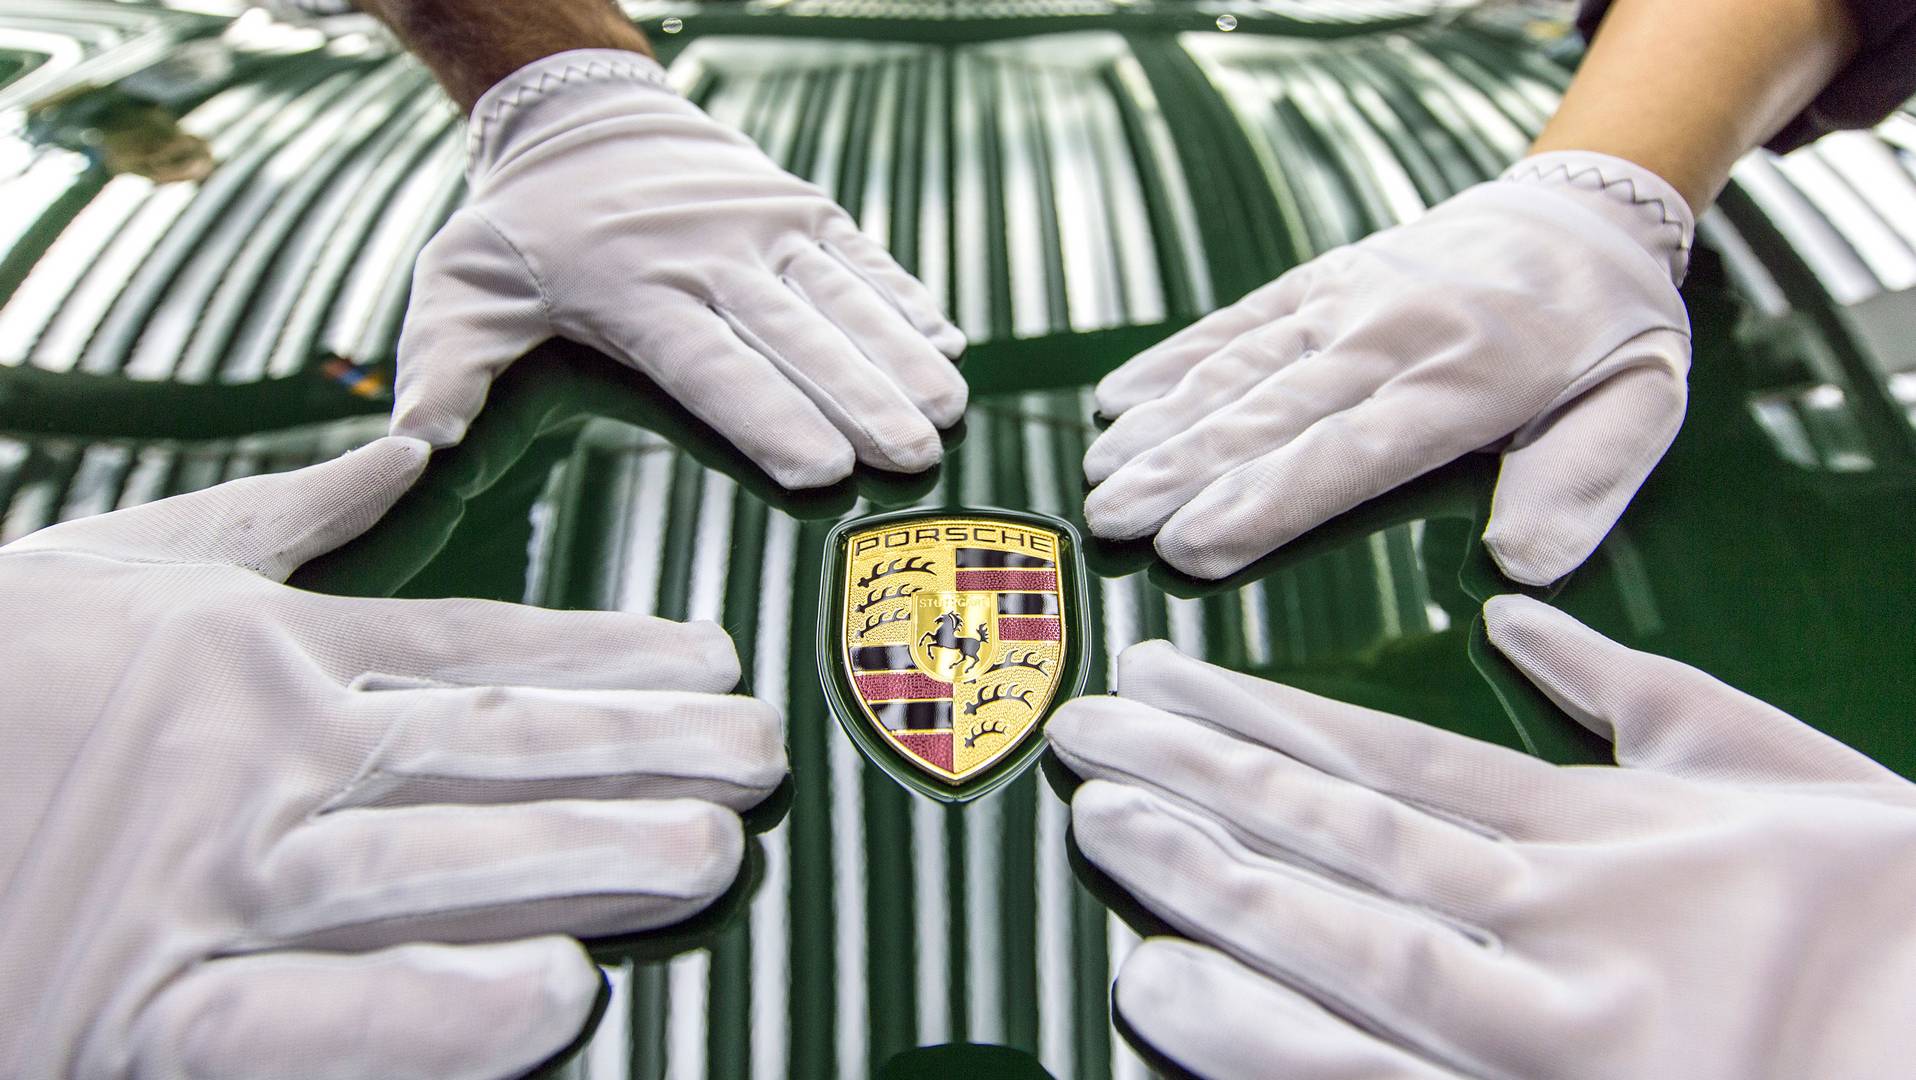 Праздничный ирландский зеленый 911 Carrera S в конечном итоге попадет в музей Porsche. Однако перед тем, как он станет музейным экспонатом, он отправится в легендарное путешествие, в том числе в Шотландское нагорье, Нюрбургринг, в США и Китай.